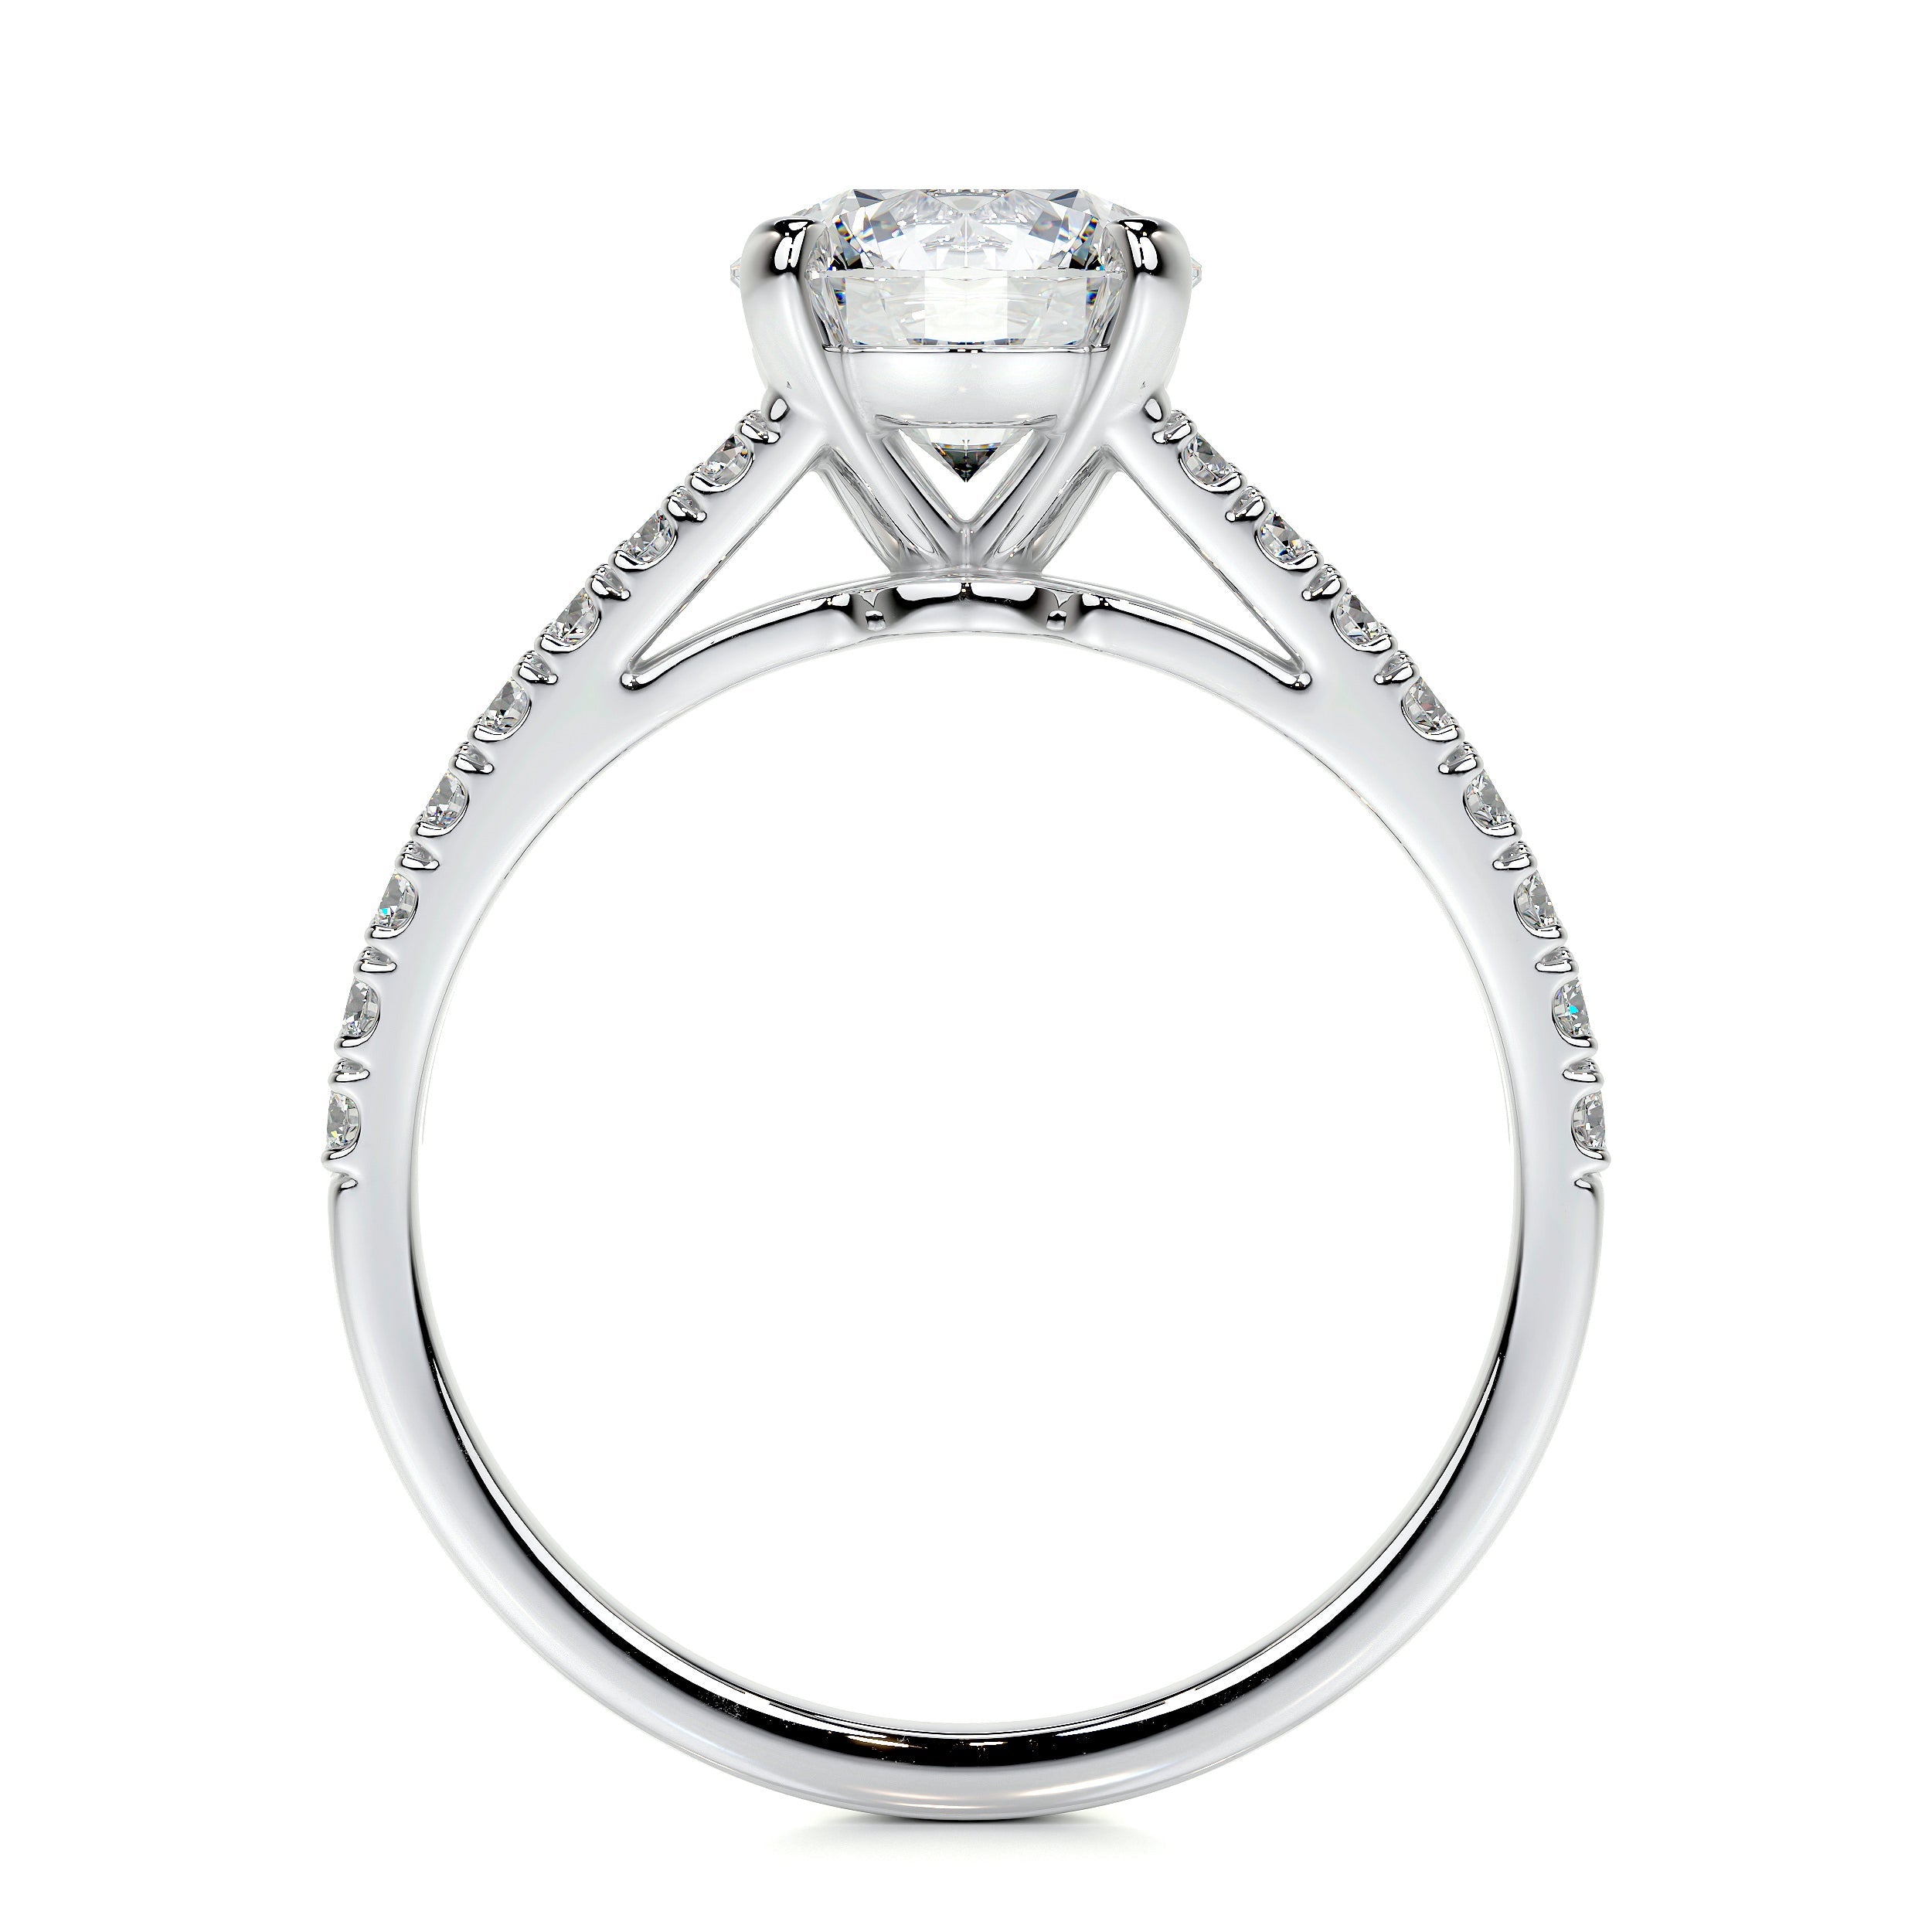 Sadie Lab Grown Diamond Ring   (2 Carat) -14K White Gold